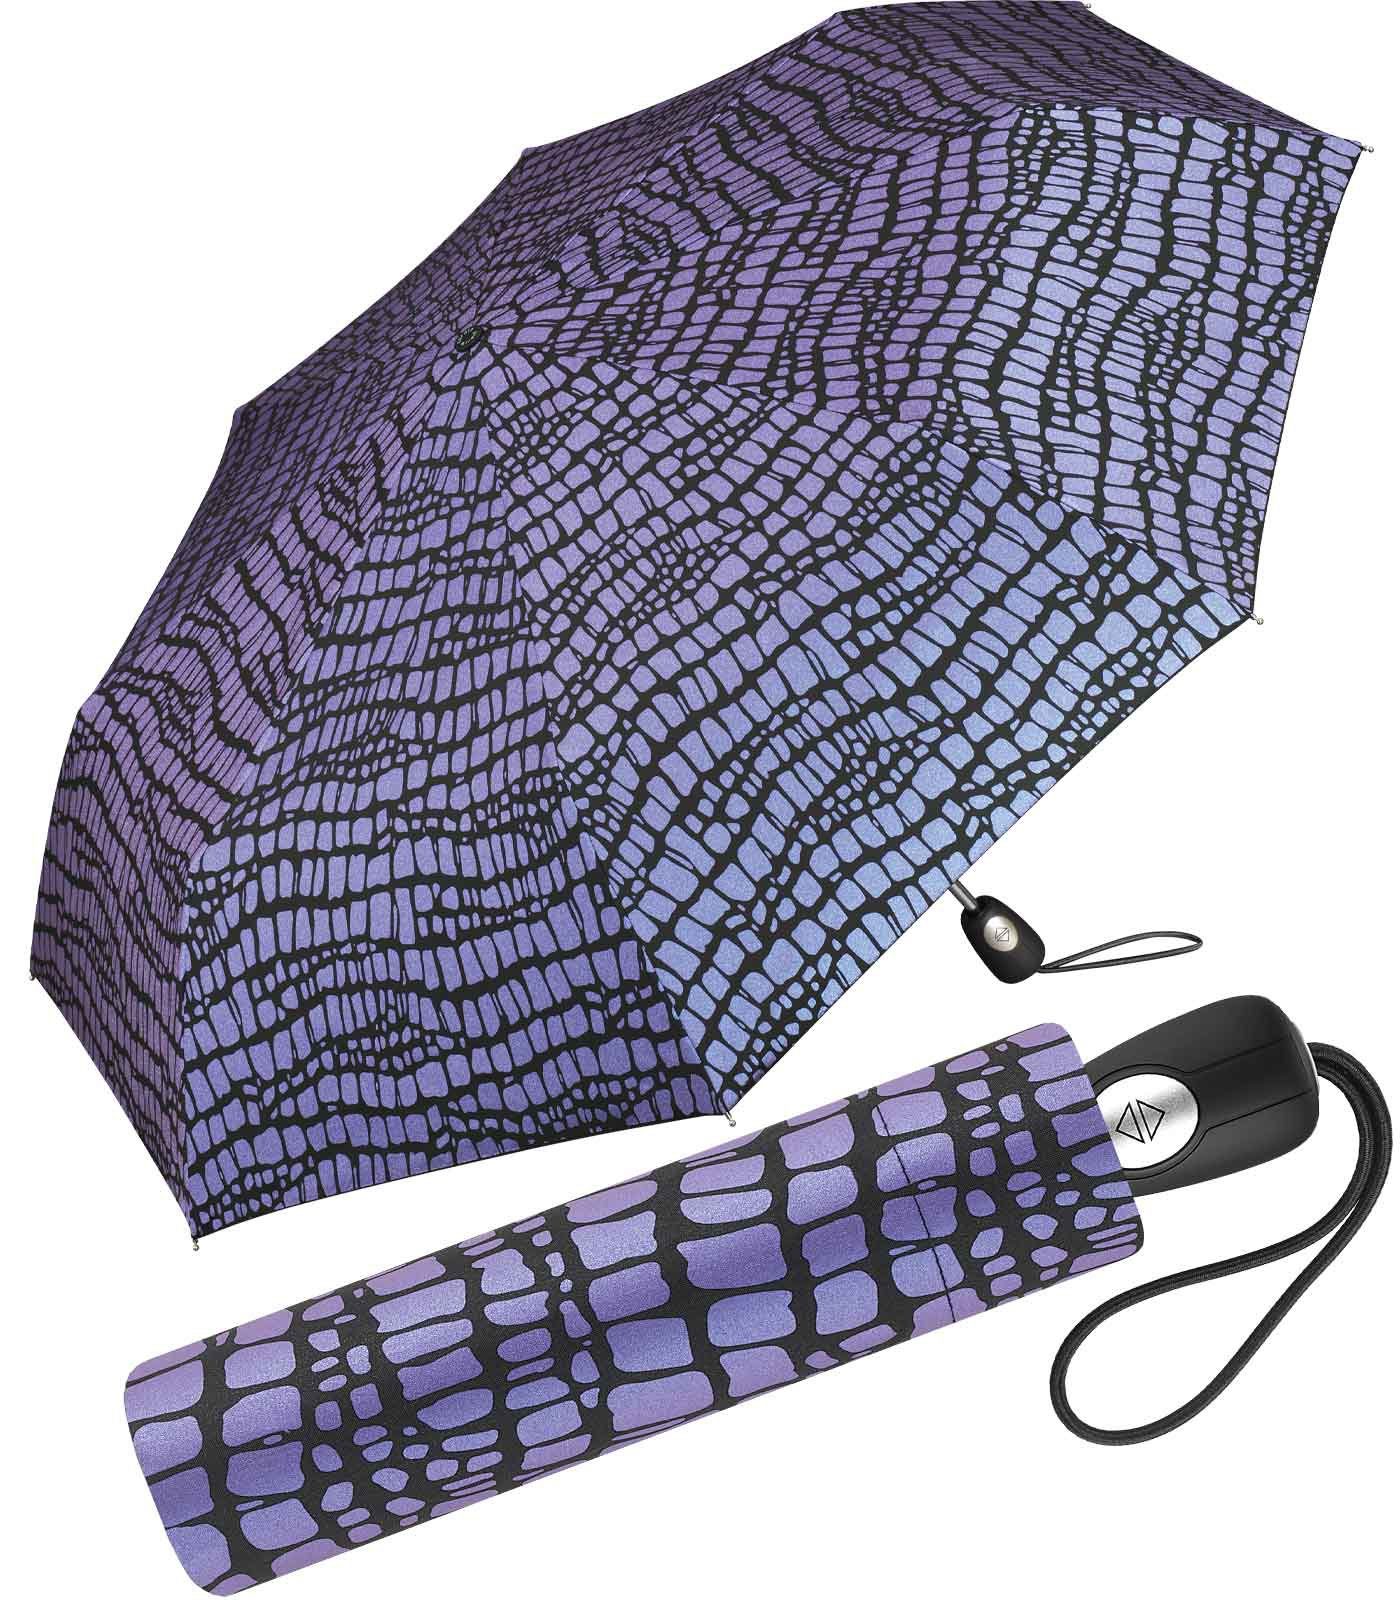 Pierre Cardin Taschenregenschirm schöner Damen-Regenschirm mit Auf-Zu-Automatik, Krokodil-Optik für den Regenschirm